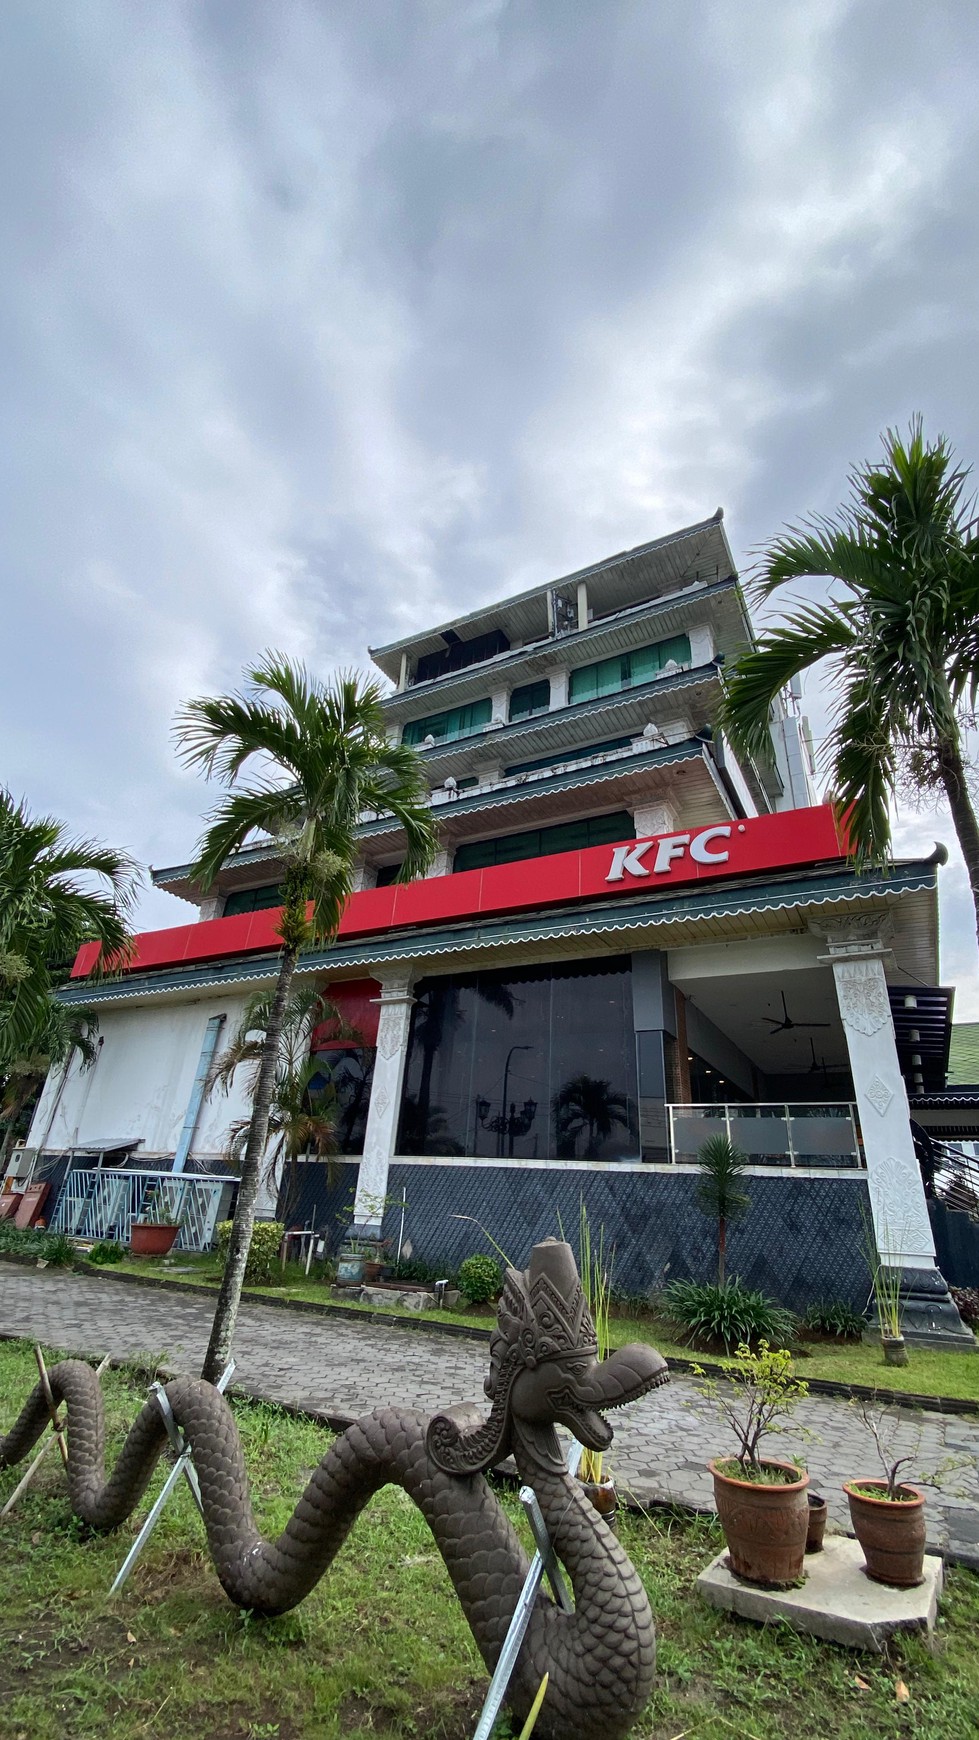 Miliki Bangunan Komersial yang Menjadi Icon Kota Yogyakarta 